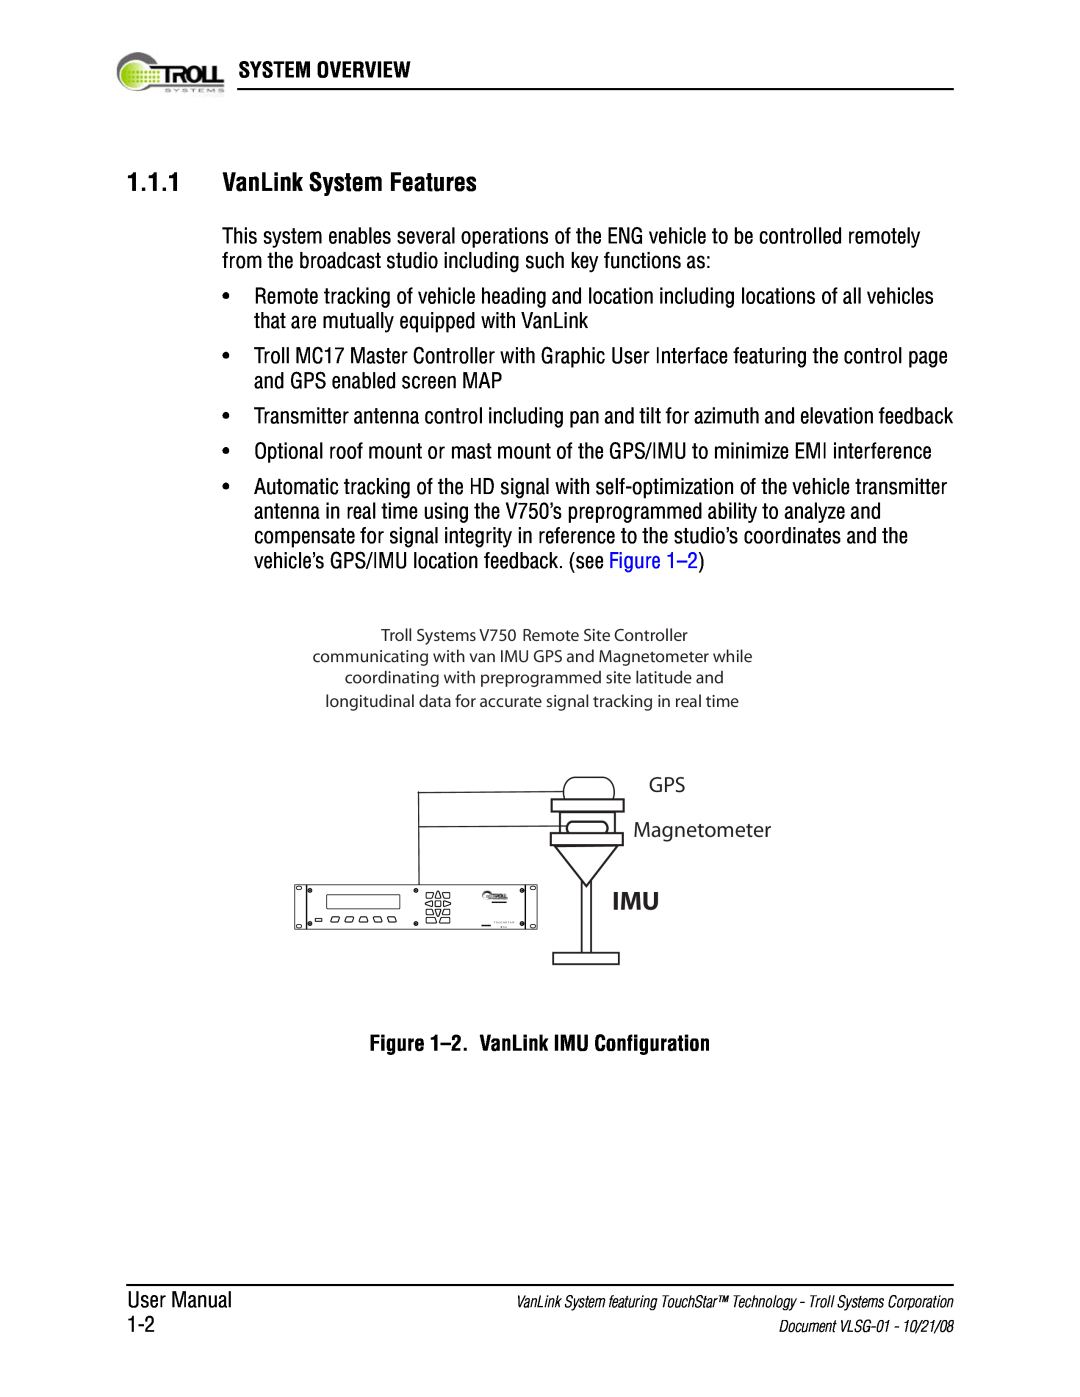 Kyocera VLSG-01 manual 1.1.1VanLink System Features, System Overview, 2.VanLink IMU Configuration, GPS Magnetometer 